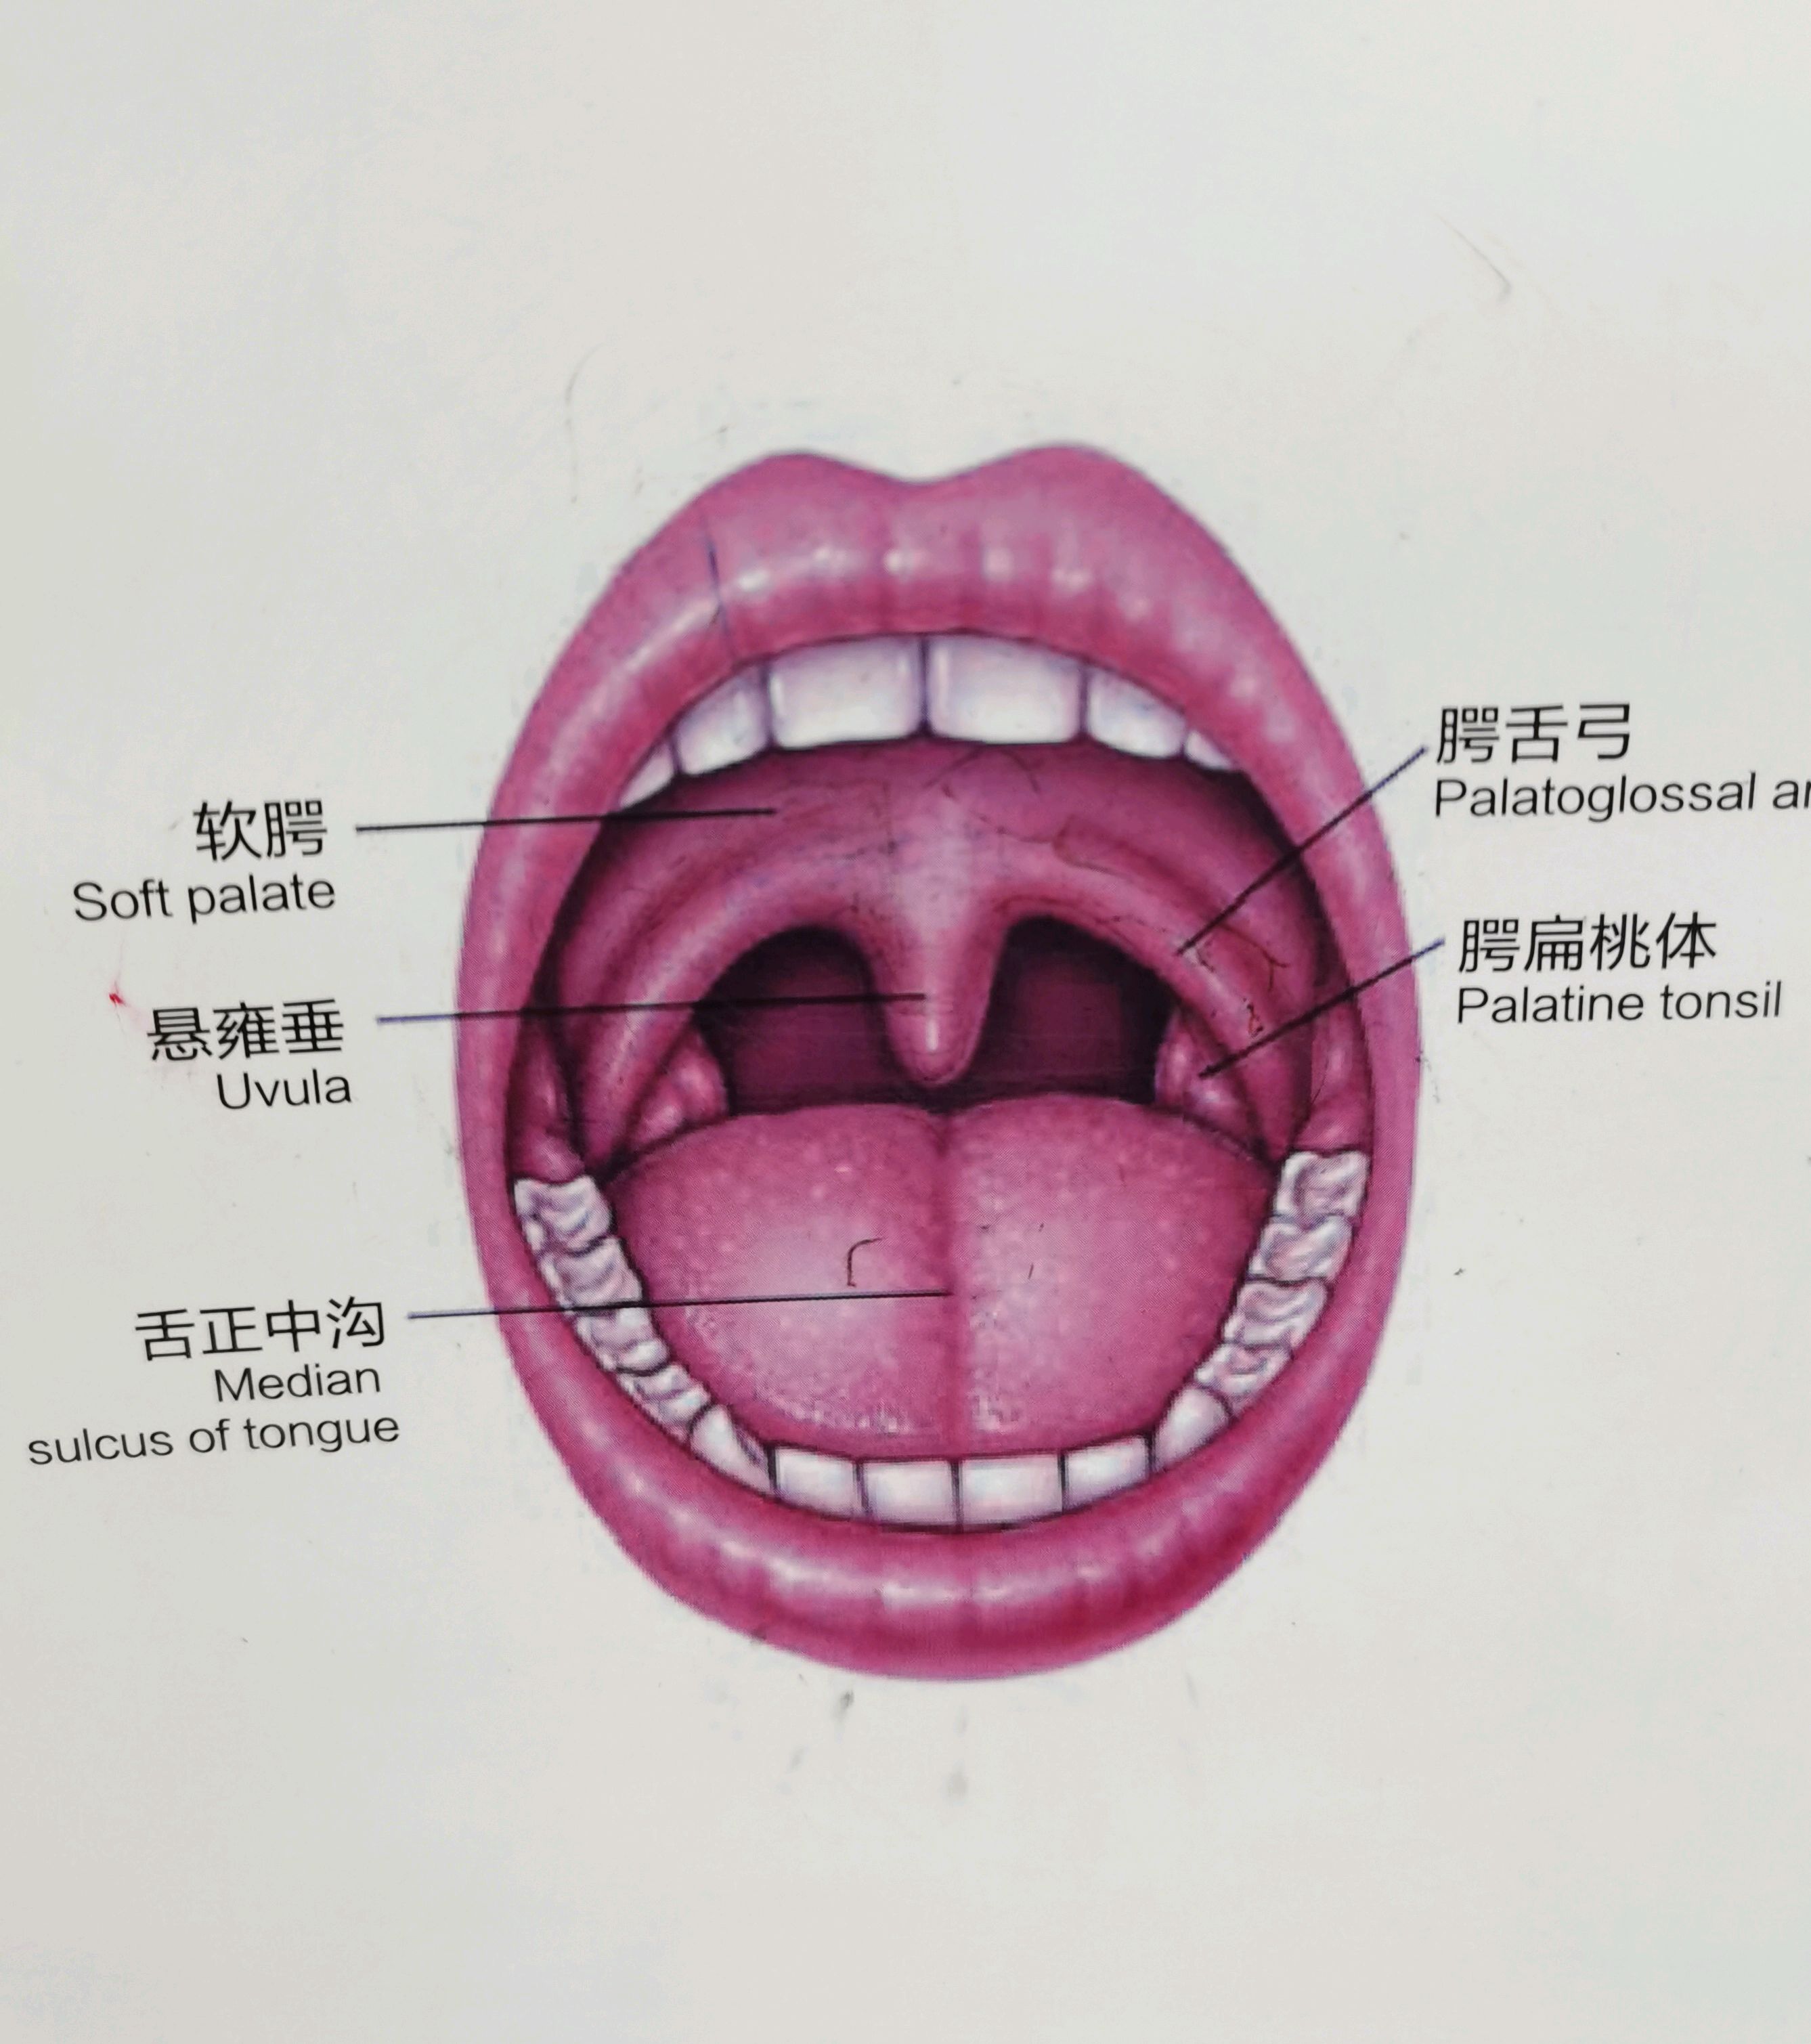 正常人的喉咙图图片